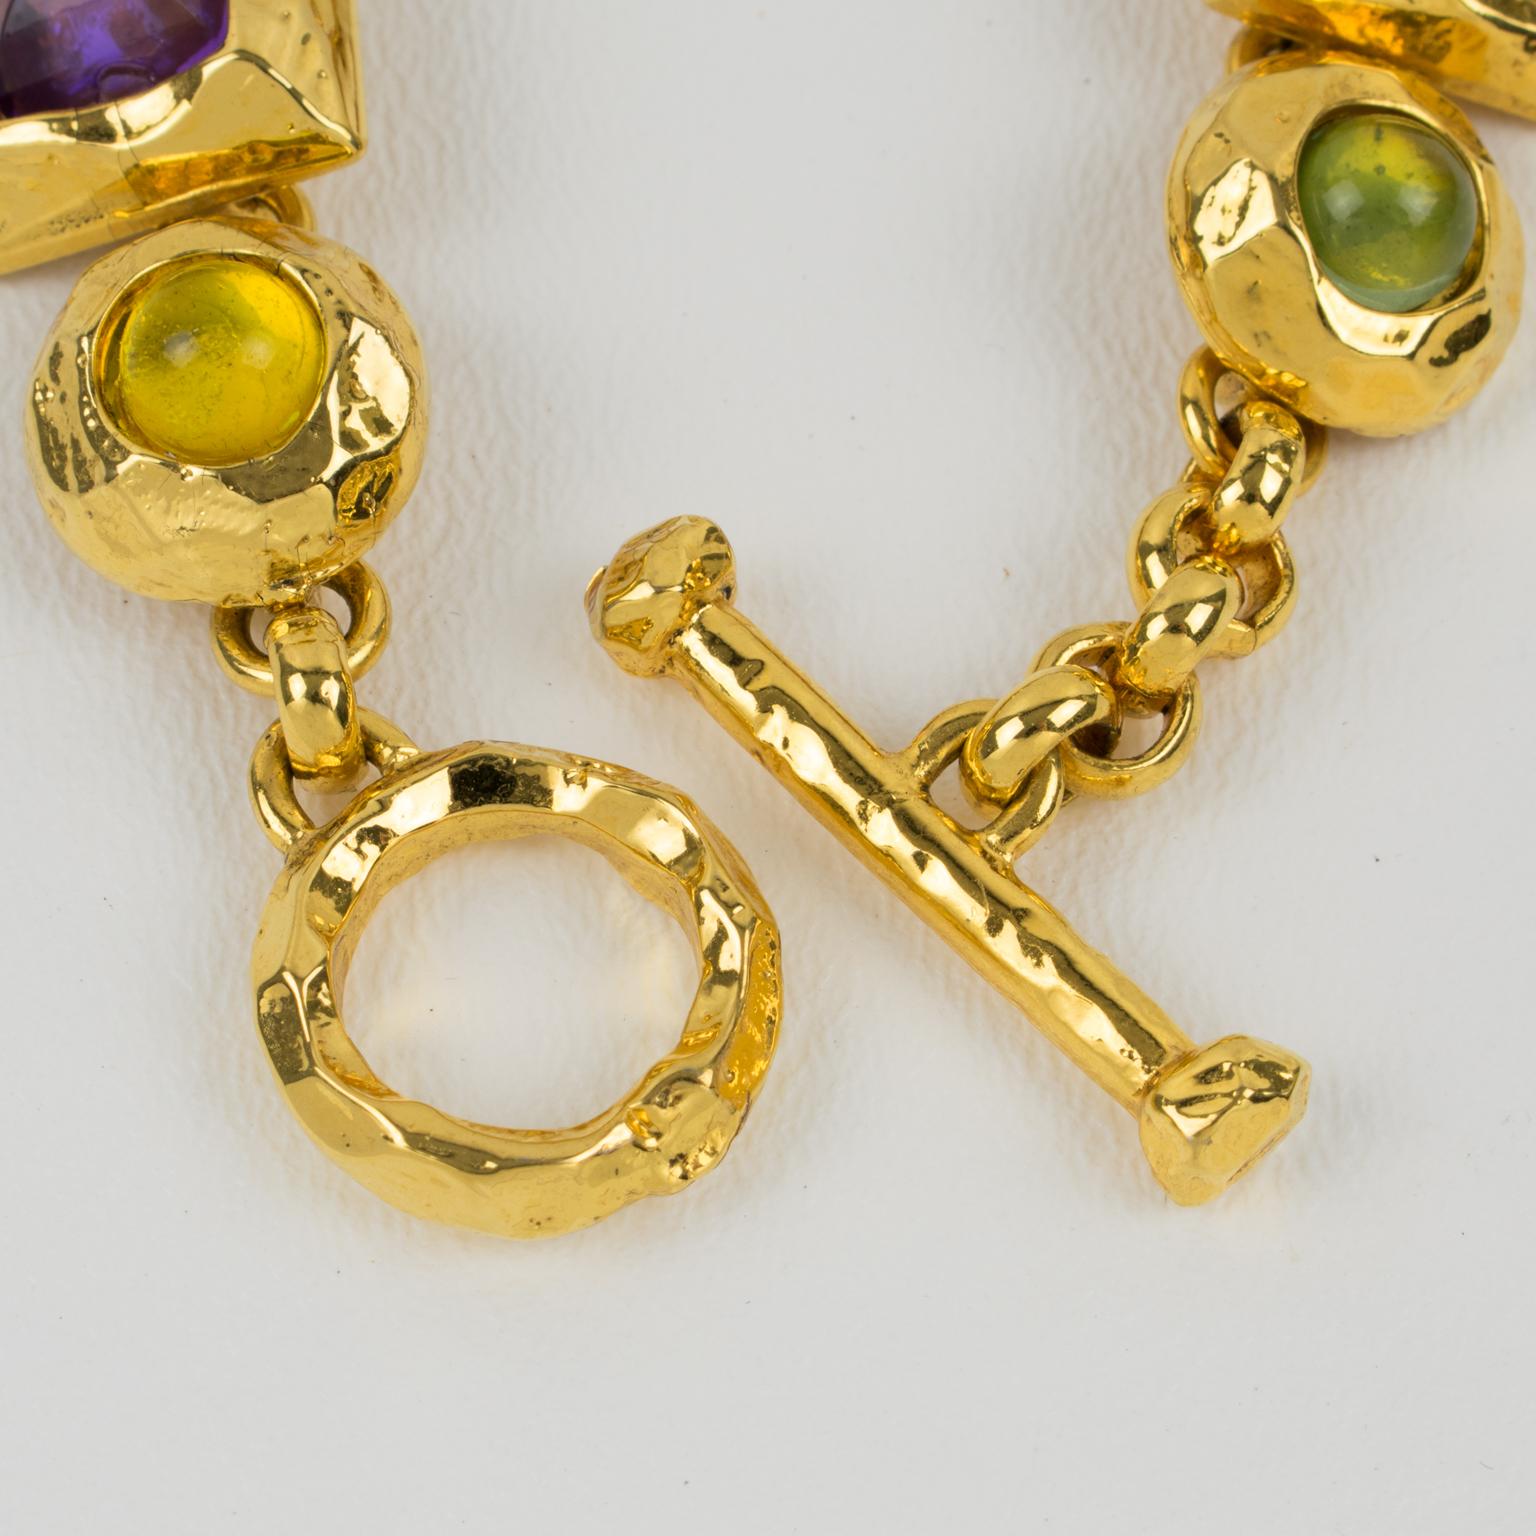 Edouard Rambaud Paris Massive Jeweled Choker Necklace 4